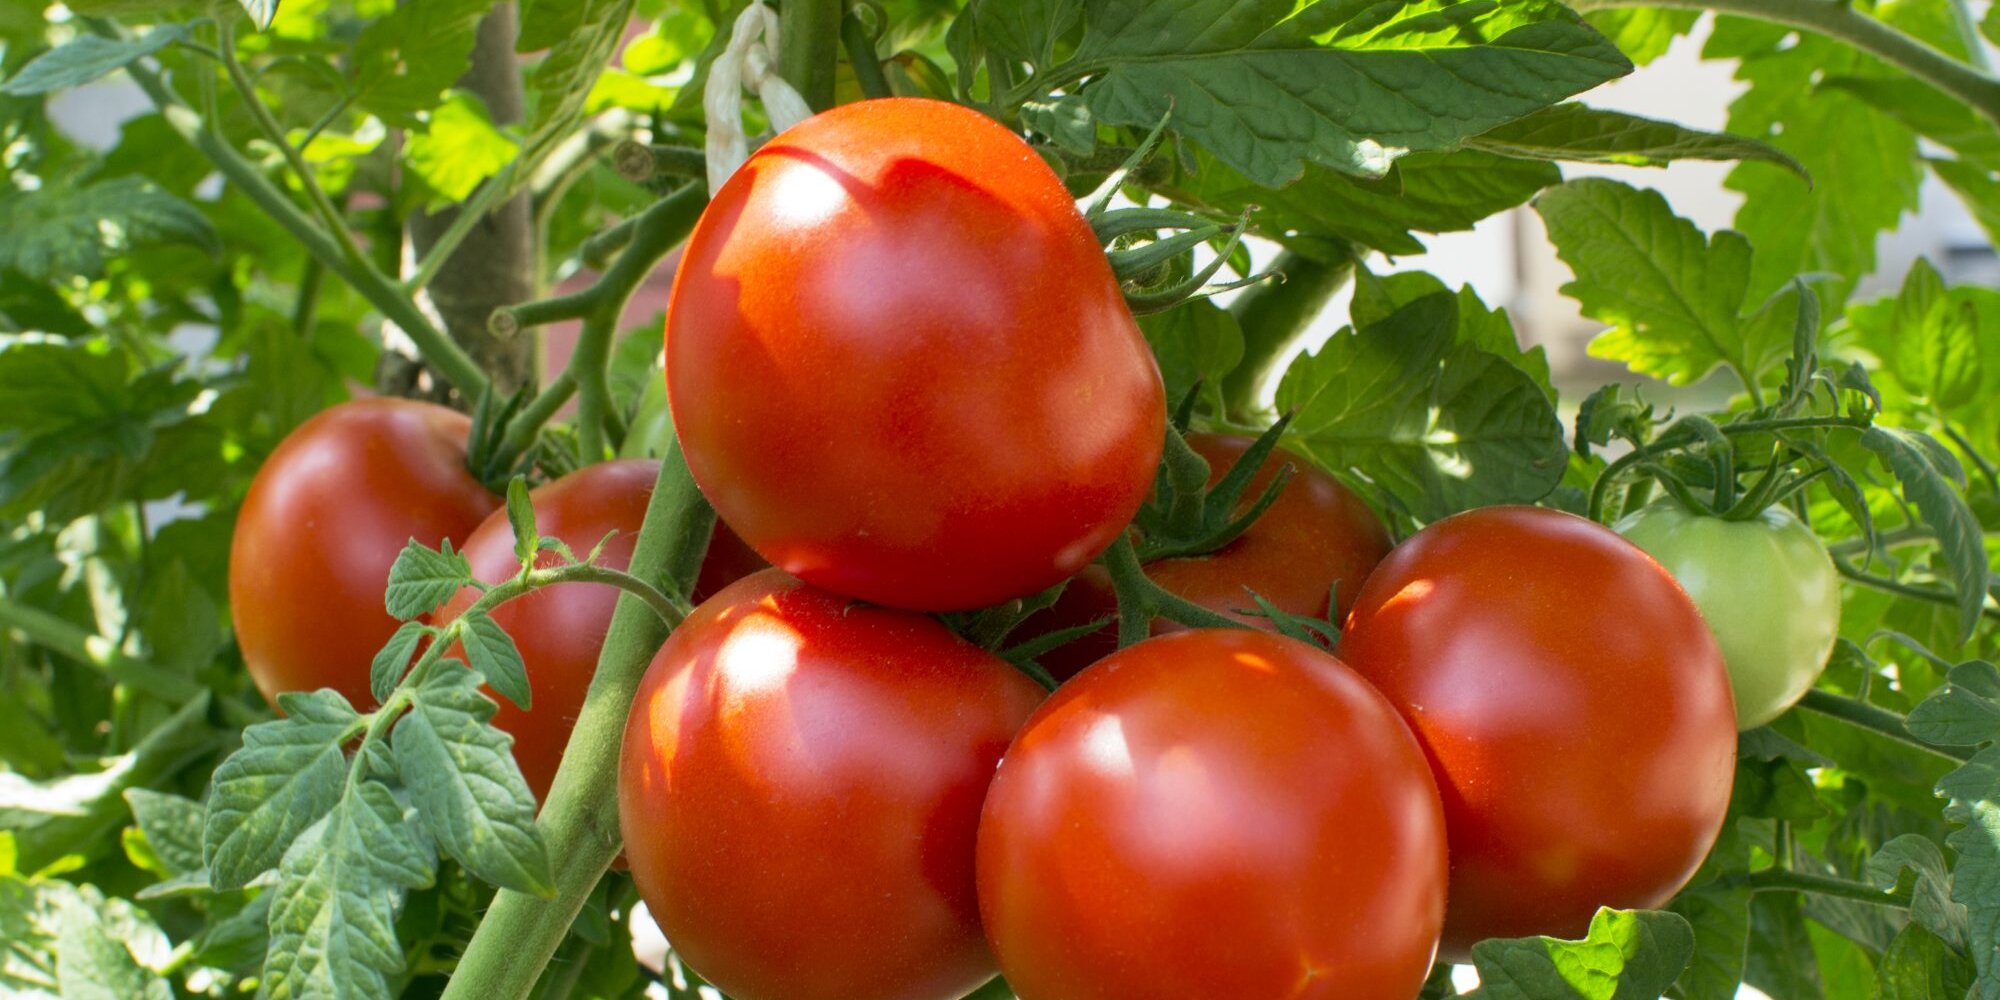 Những sai lầm khi trồng cà chua bạn nên biết khi bắt đầu làm vườn - Ảnh 3.